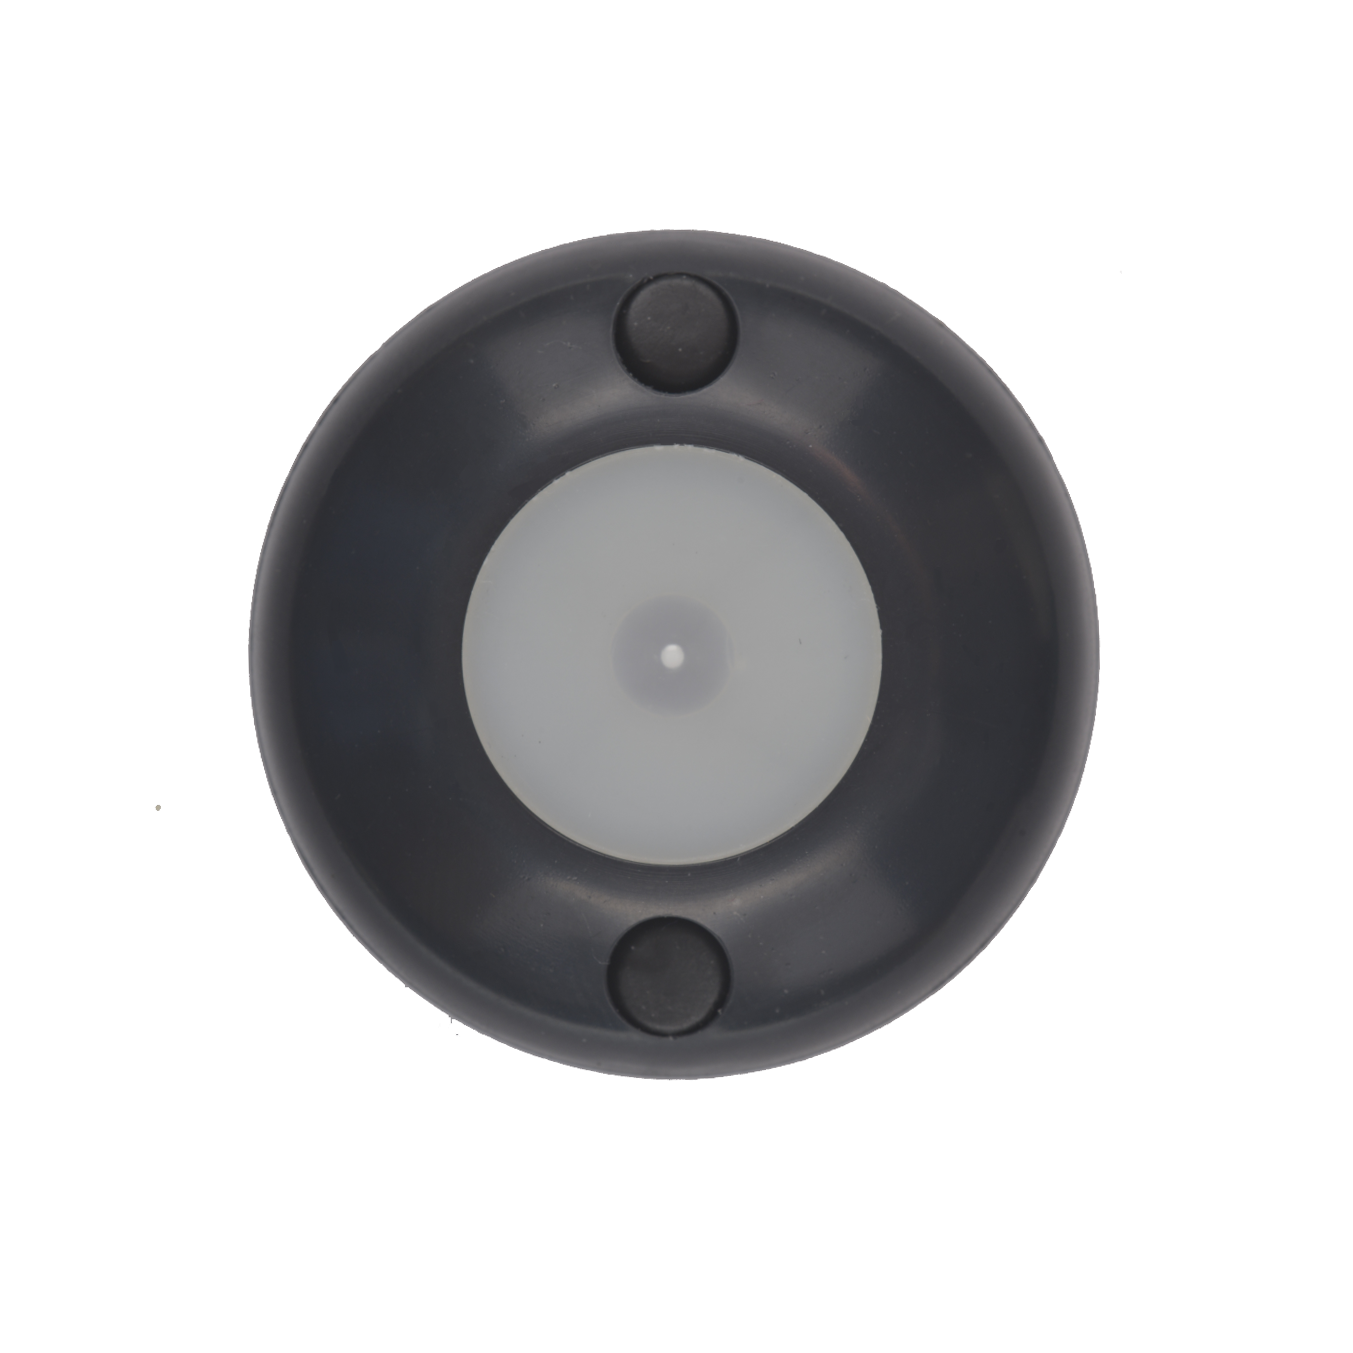 ART-ZN-Exit-Sensor износостойкая сенсорная кнопка выхода с приятной подсветкой